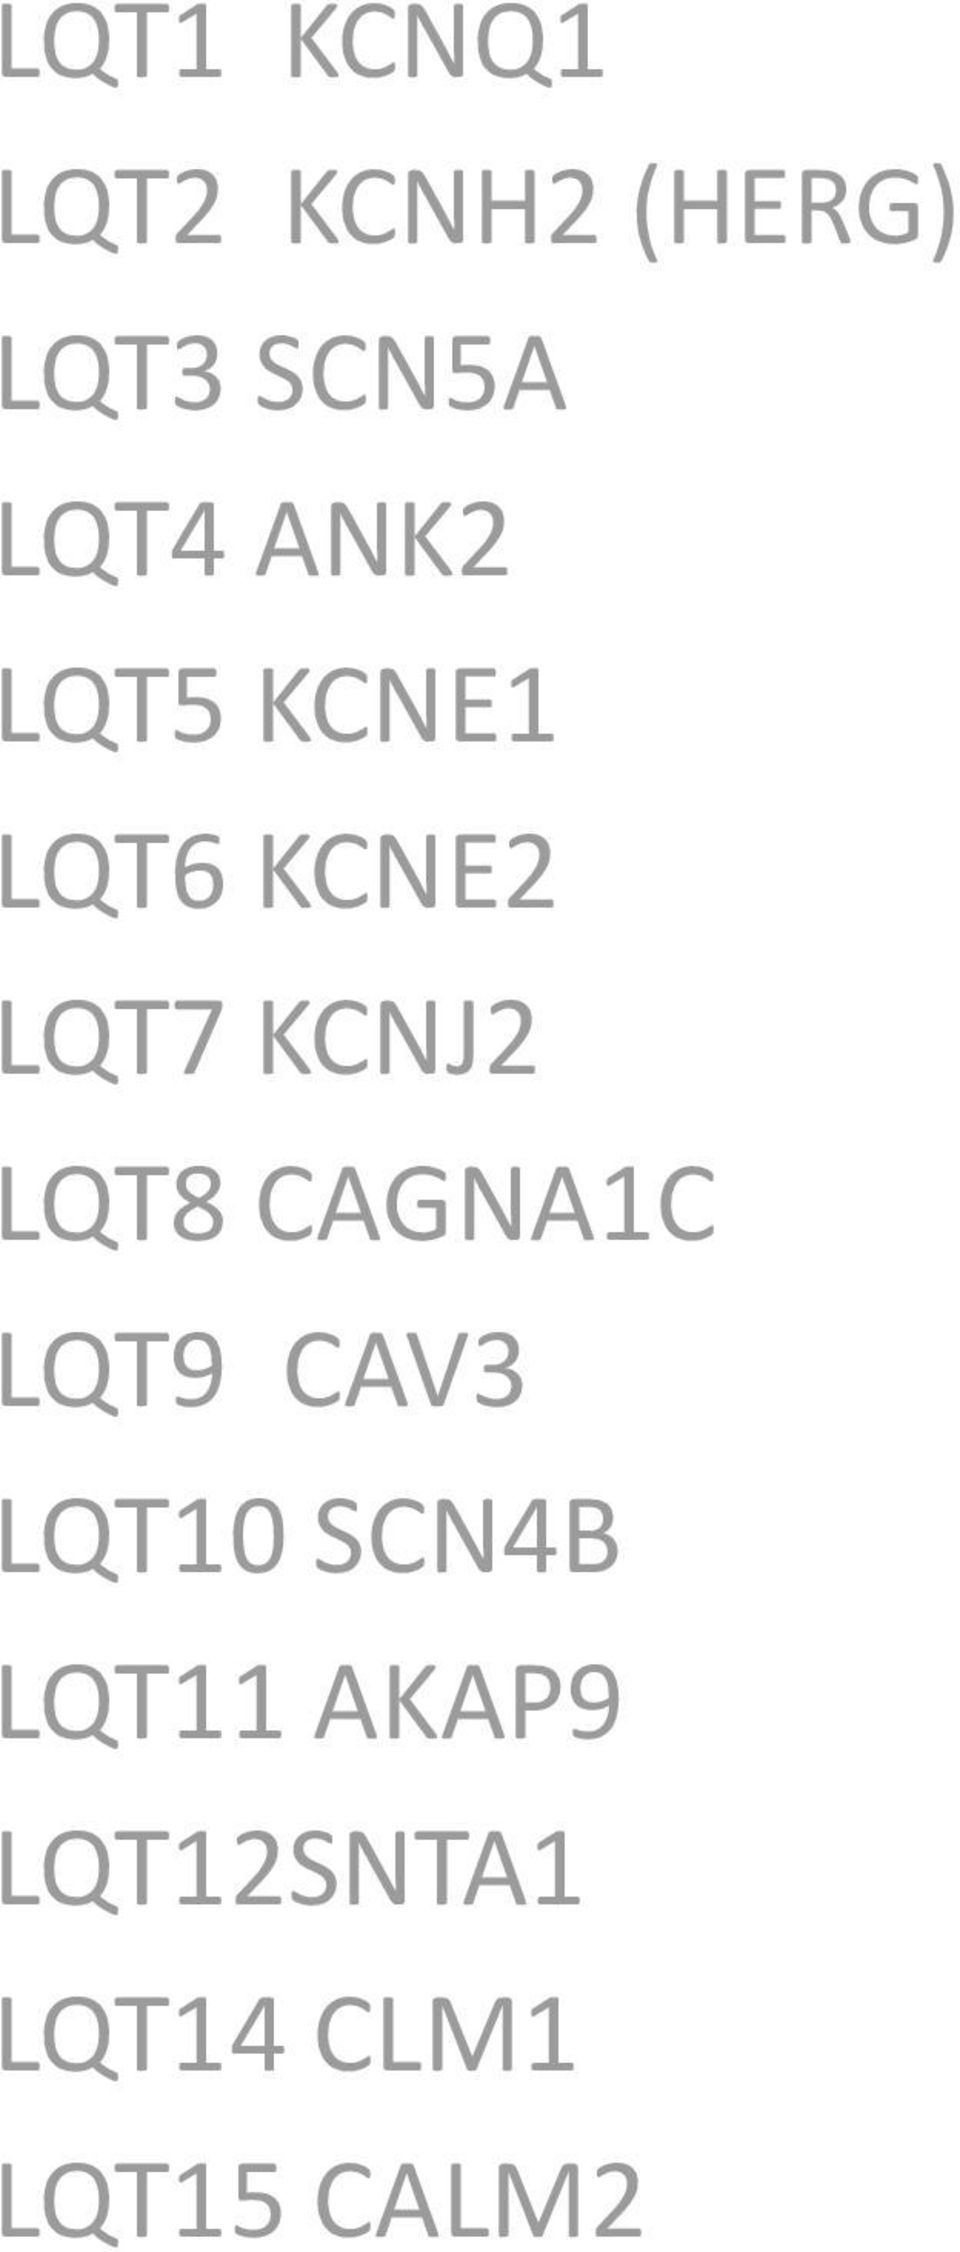 KCNJ2 LQT8 CAGNA1C LQT9 CAV3 LQT10 SCN4B